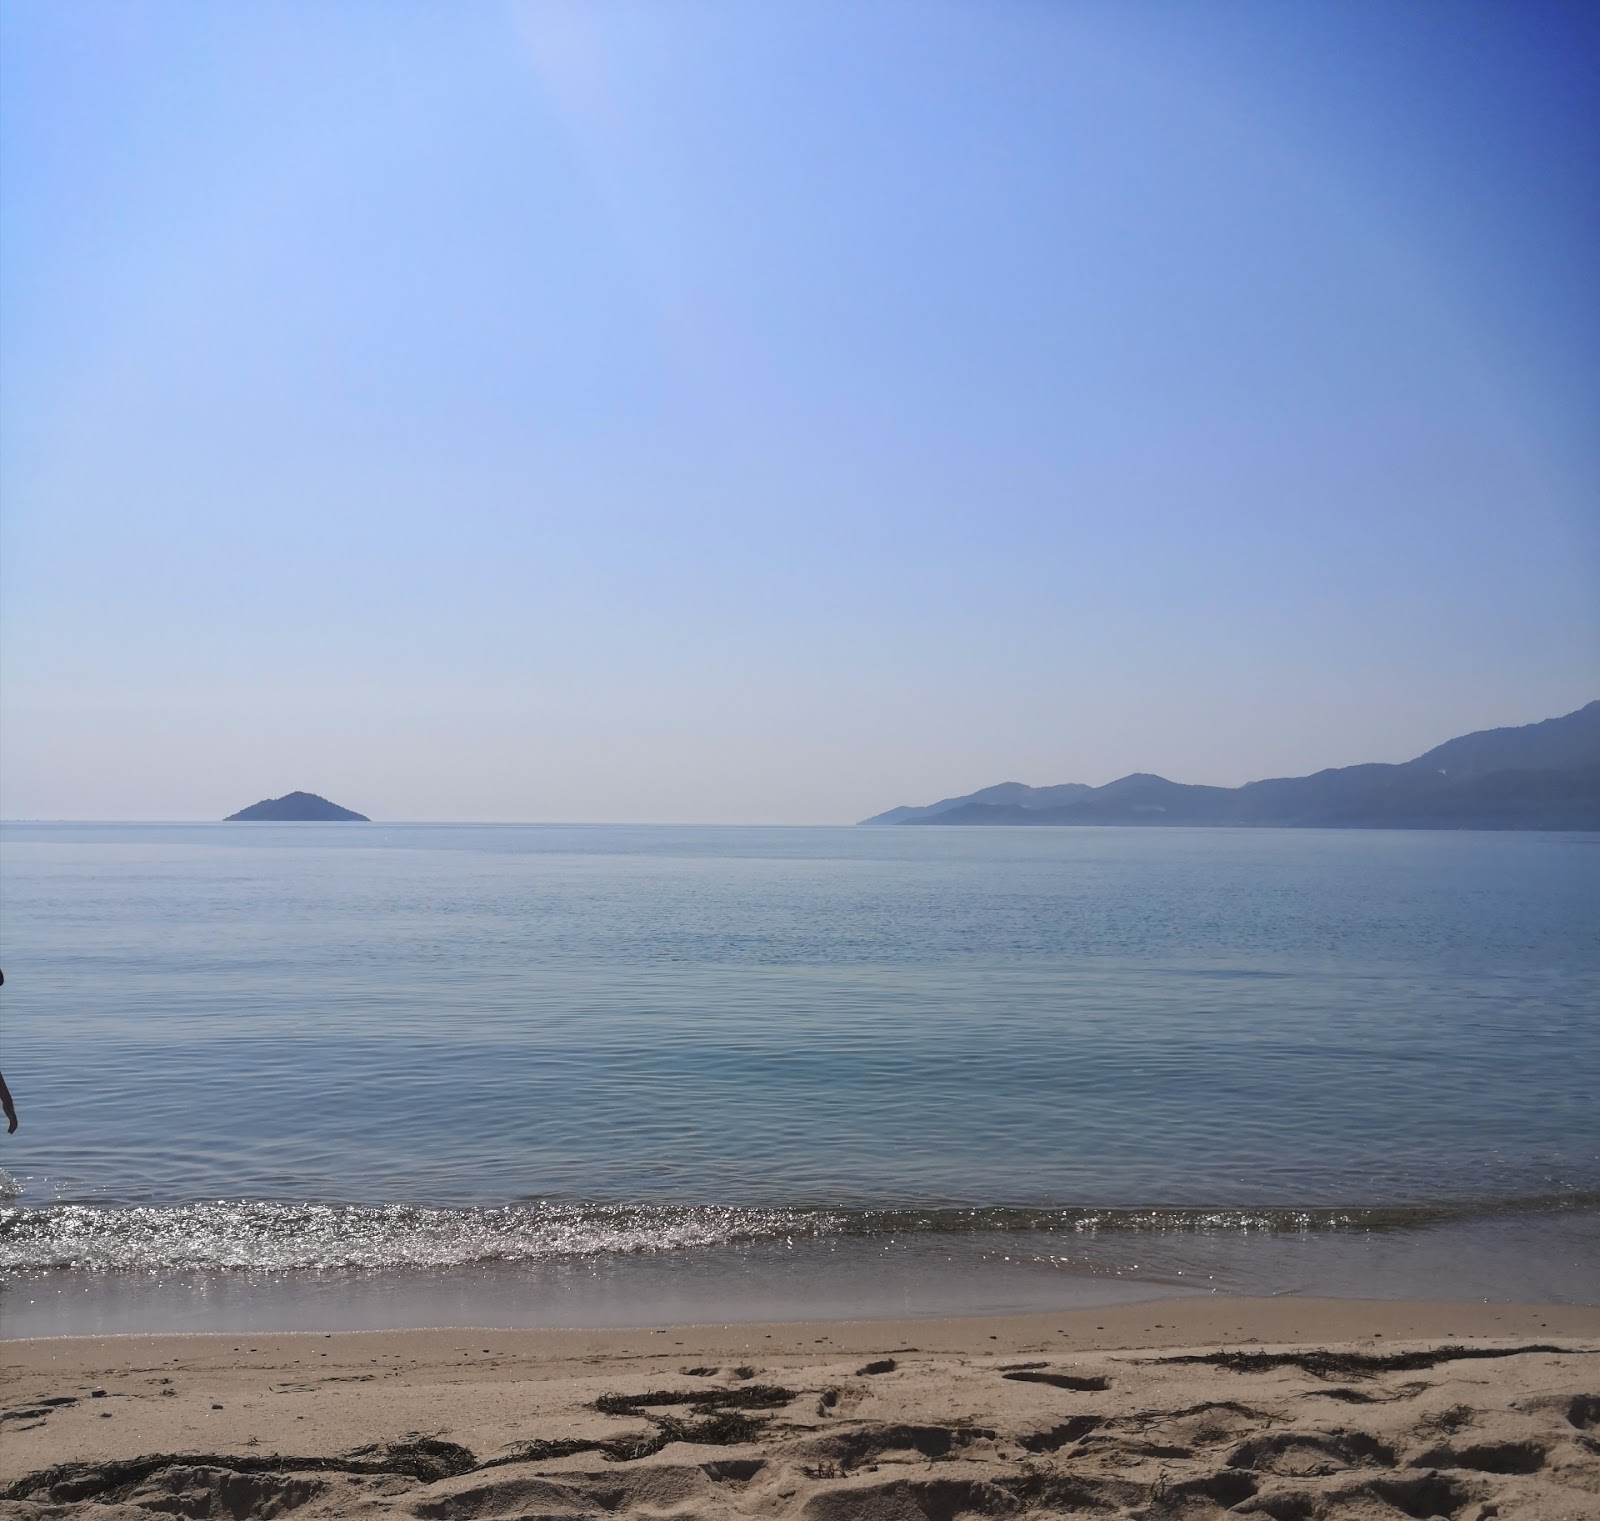 Agiasma beach'in fotoğrafı beyaz kum yüzey ile